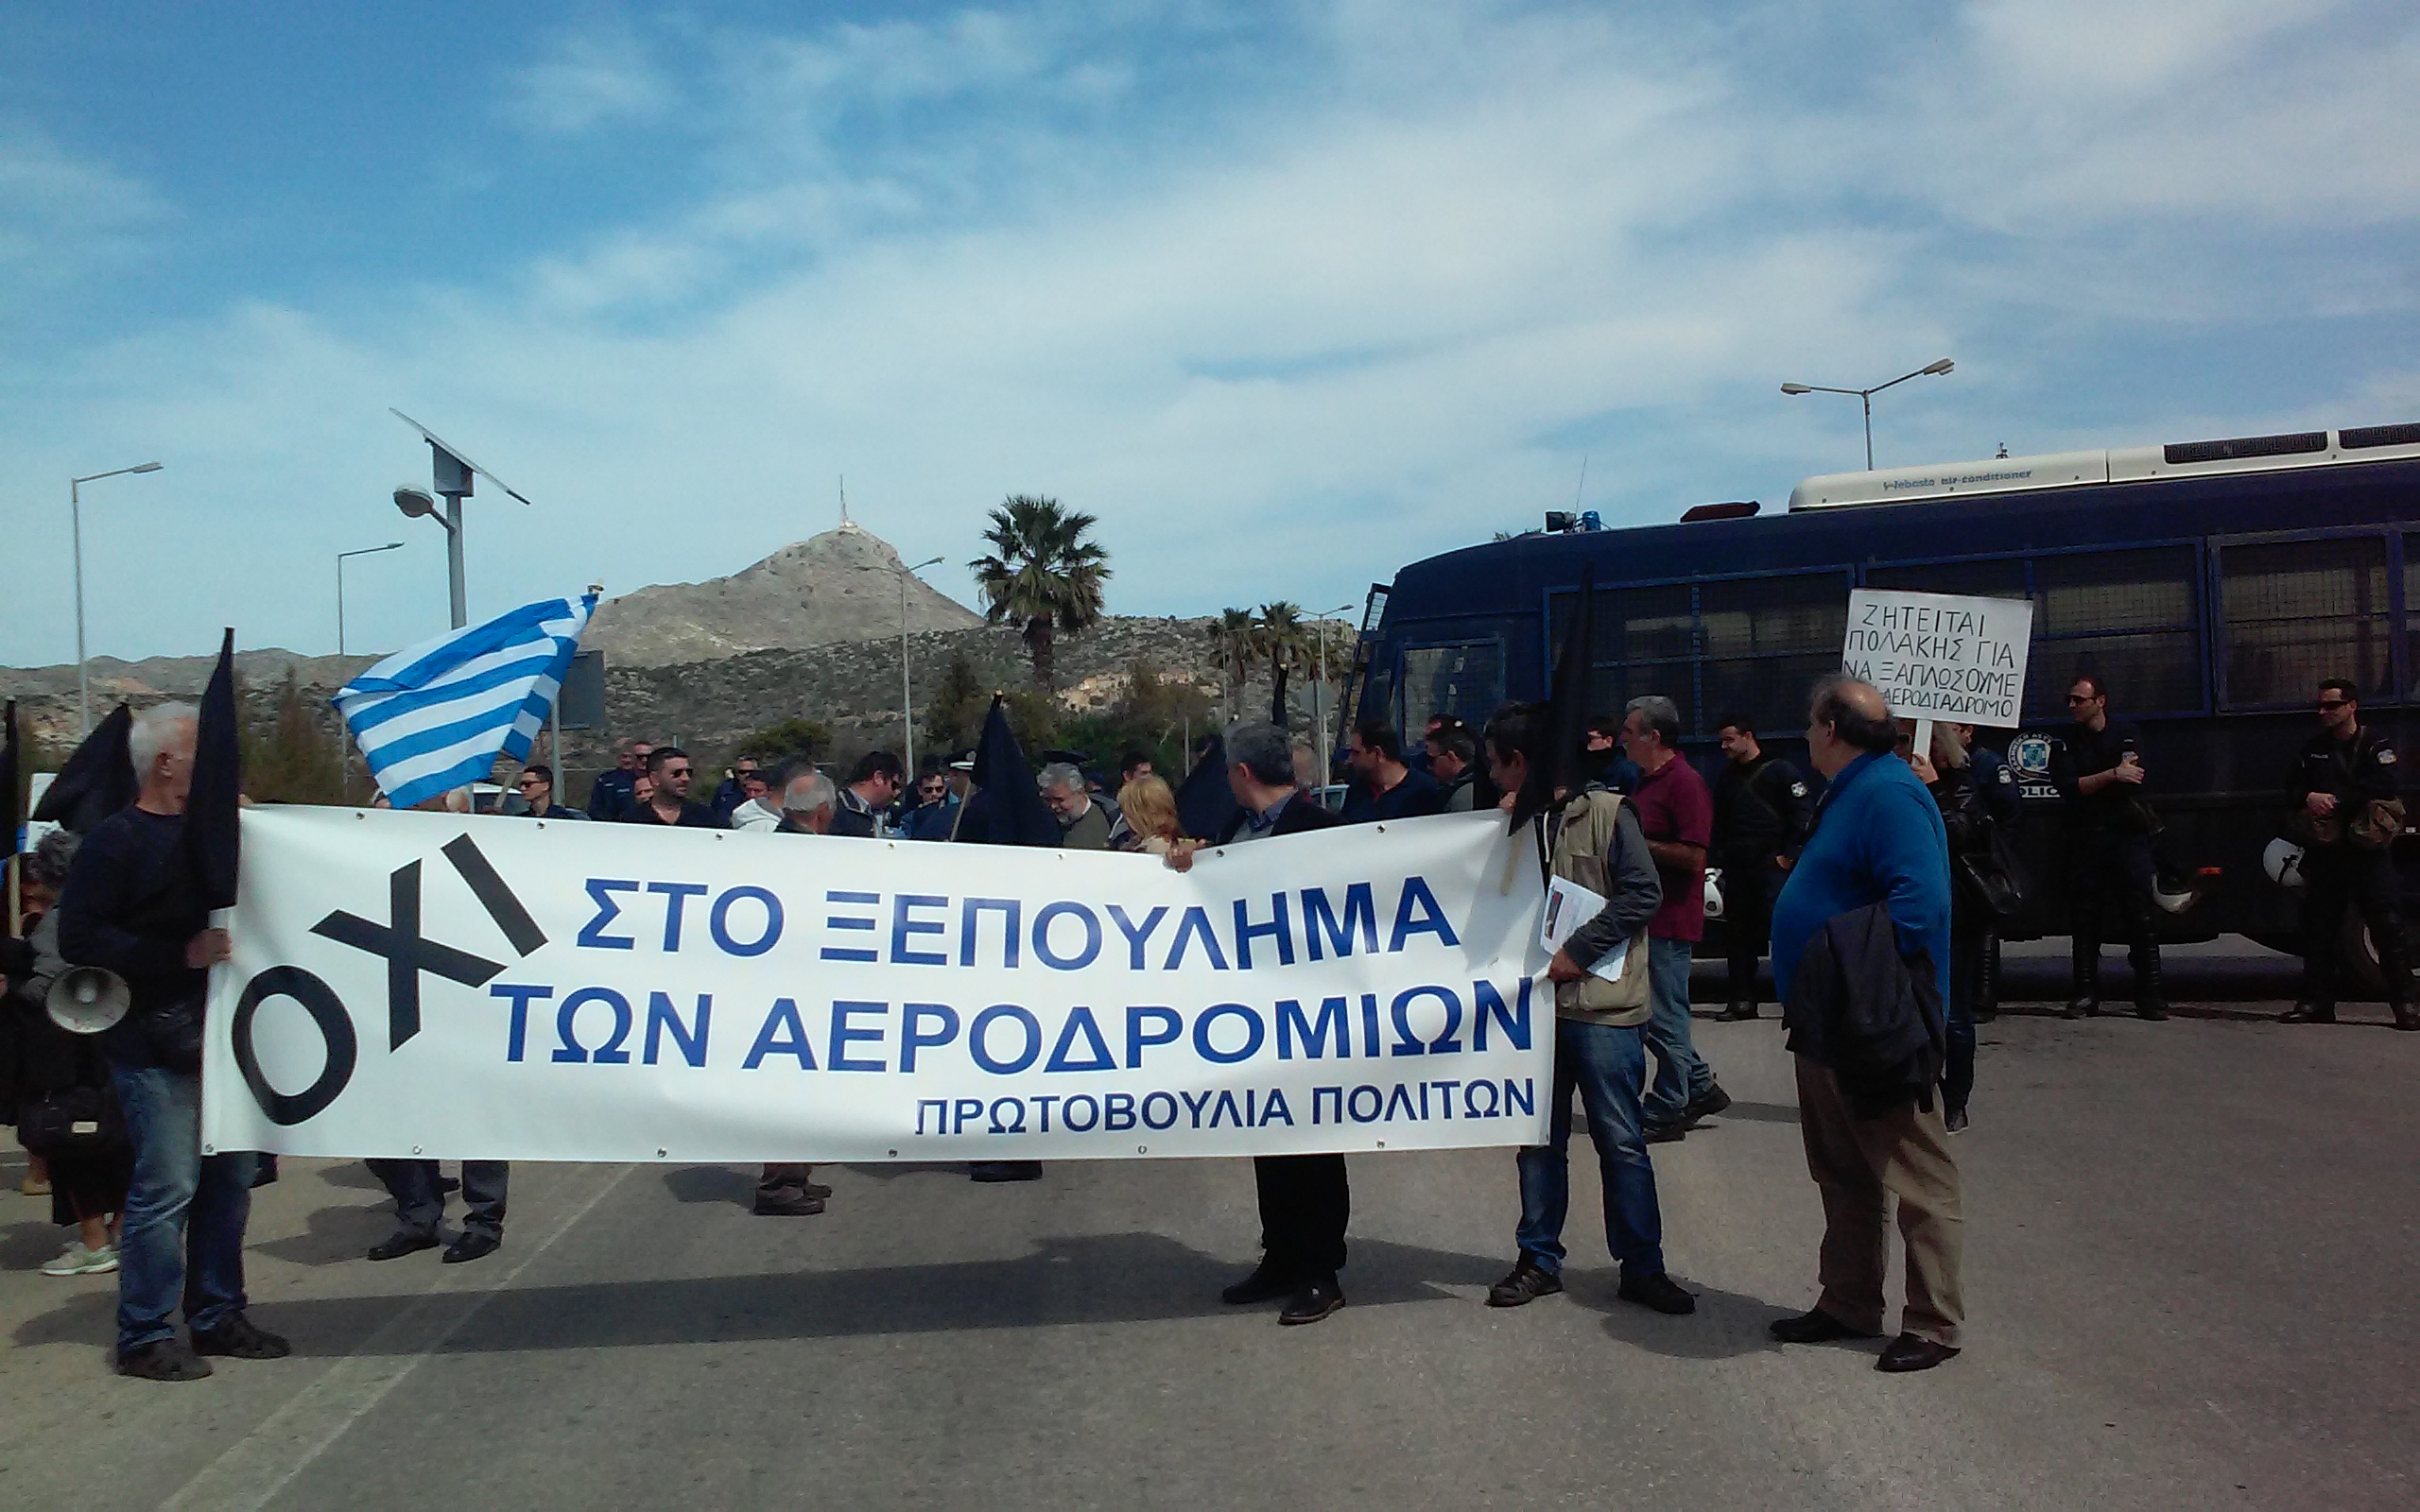 Διαδήλωση ενάντια στην εκχώρηση του αεροδρομίου Χανίων παρουσία αστυνομίας